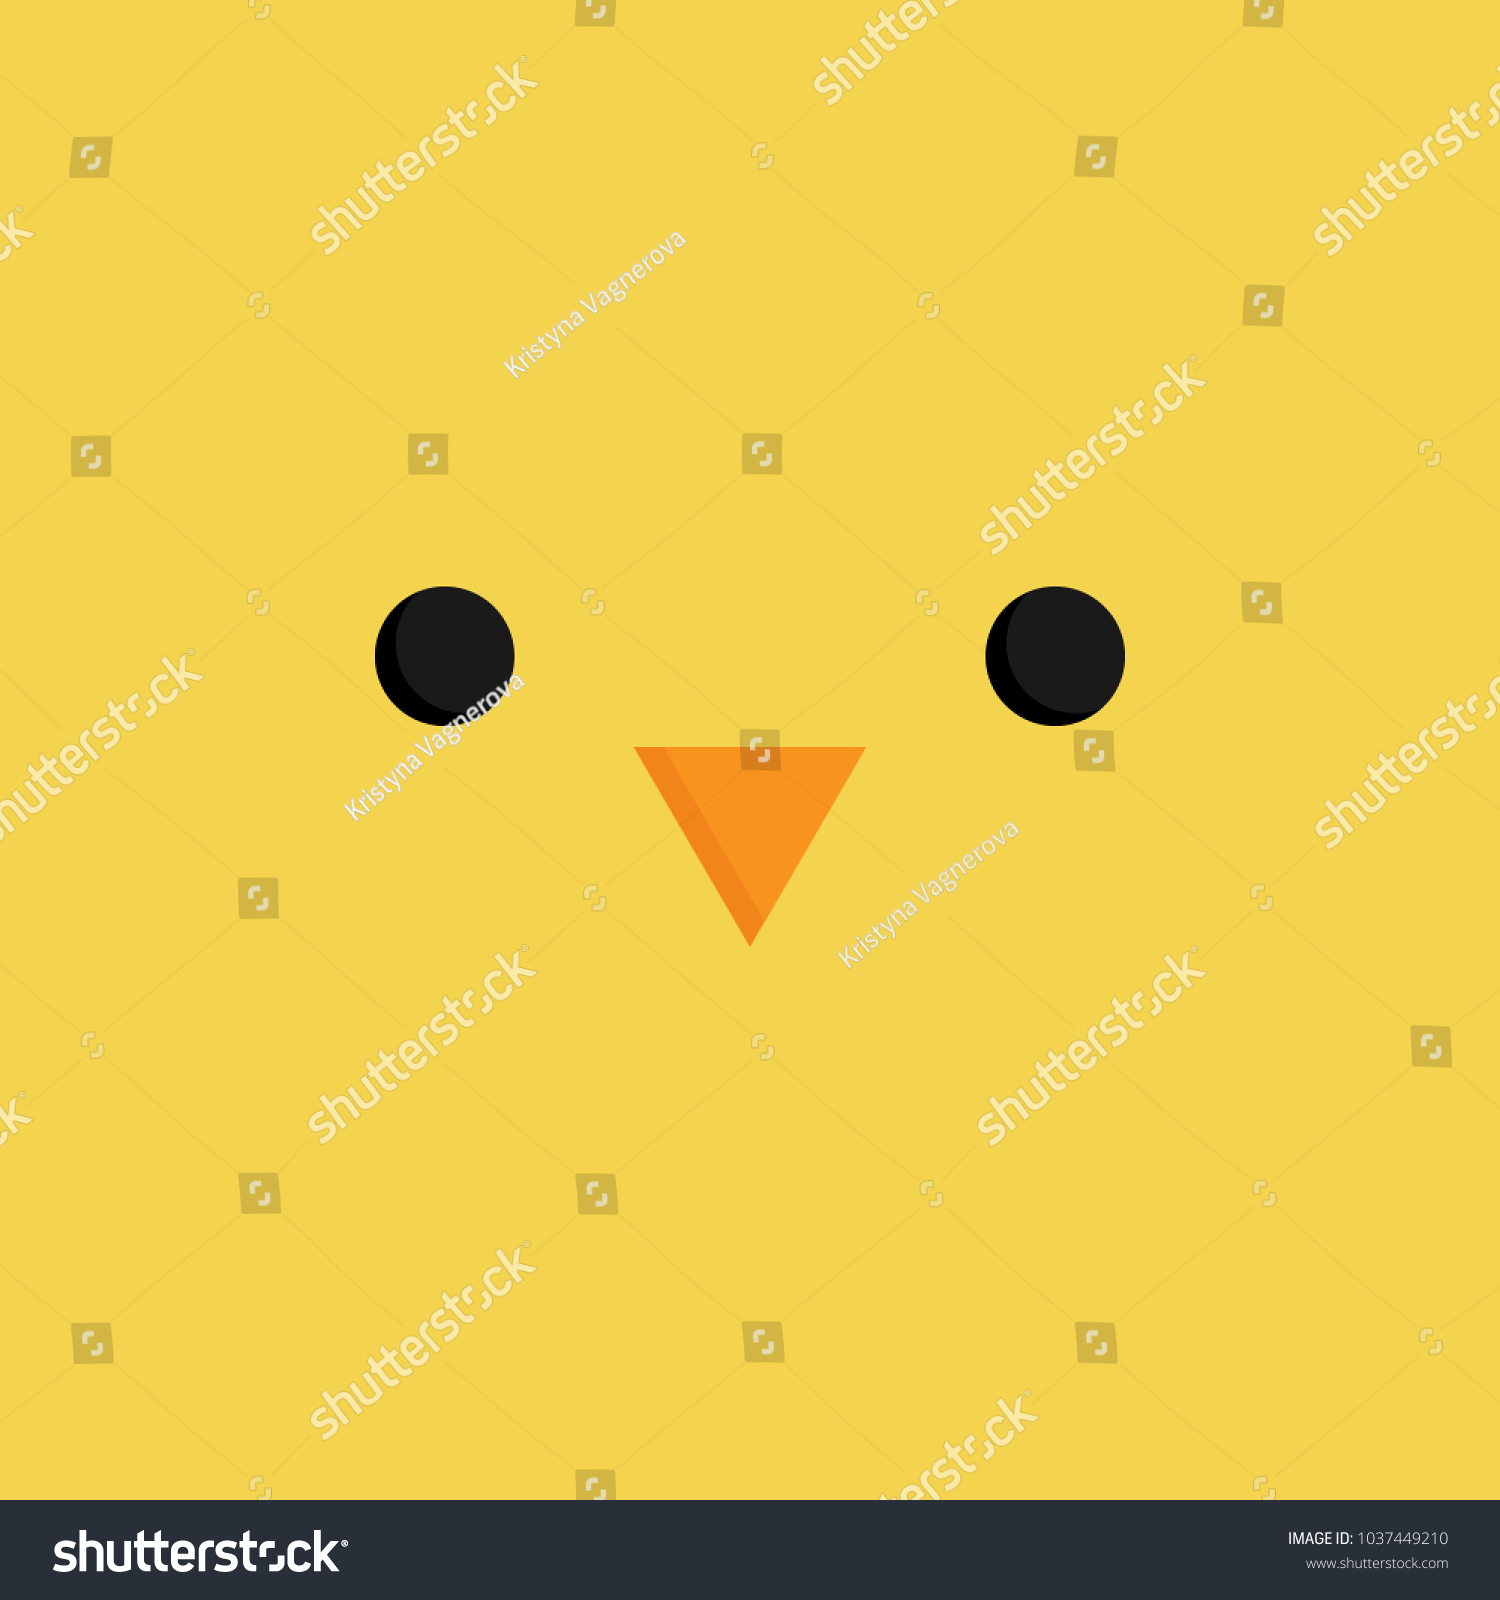 かわいい女の子のベクター画像イラスト 簡単な四角の漫画 イースター黄色の鶏の顔 小さなくちばしの目 のベクター画像素材 ロイヤリティフリー